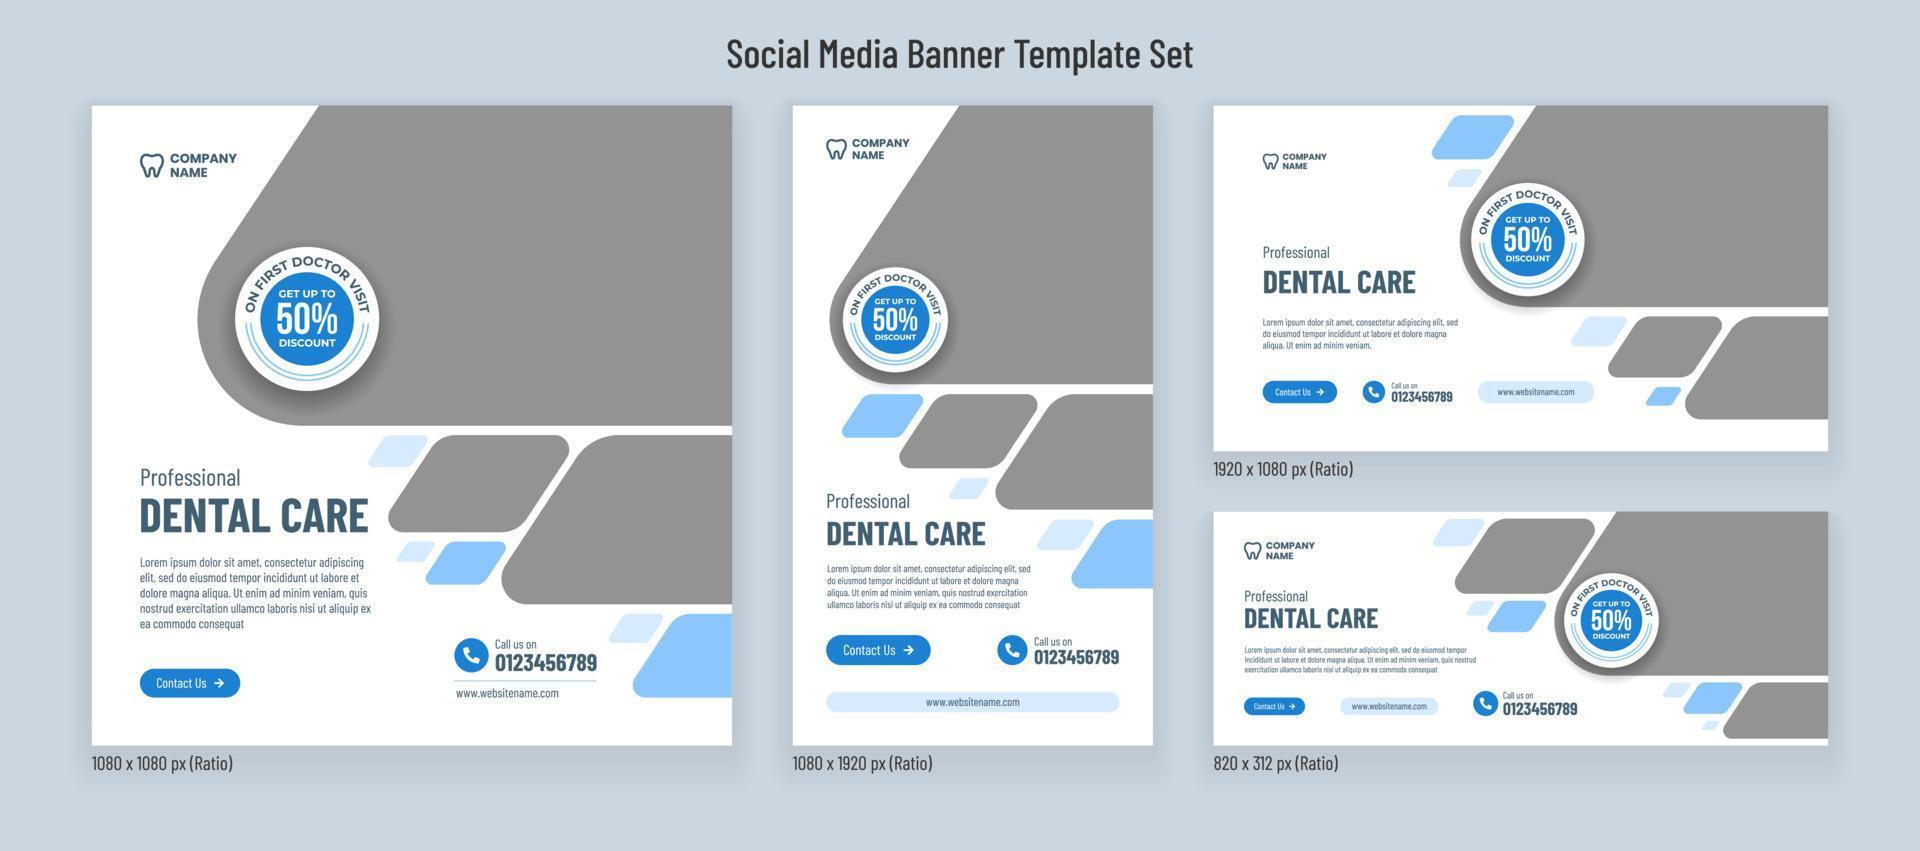 Medical dental care banner social media post template or flyer design vector